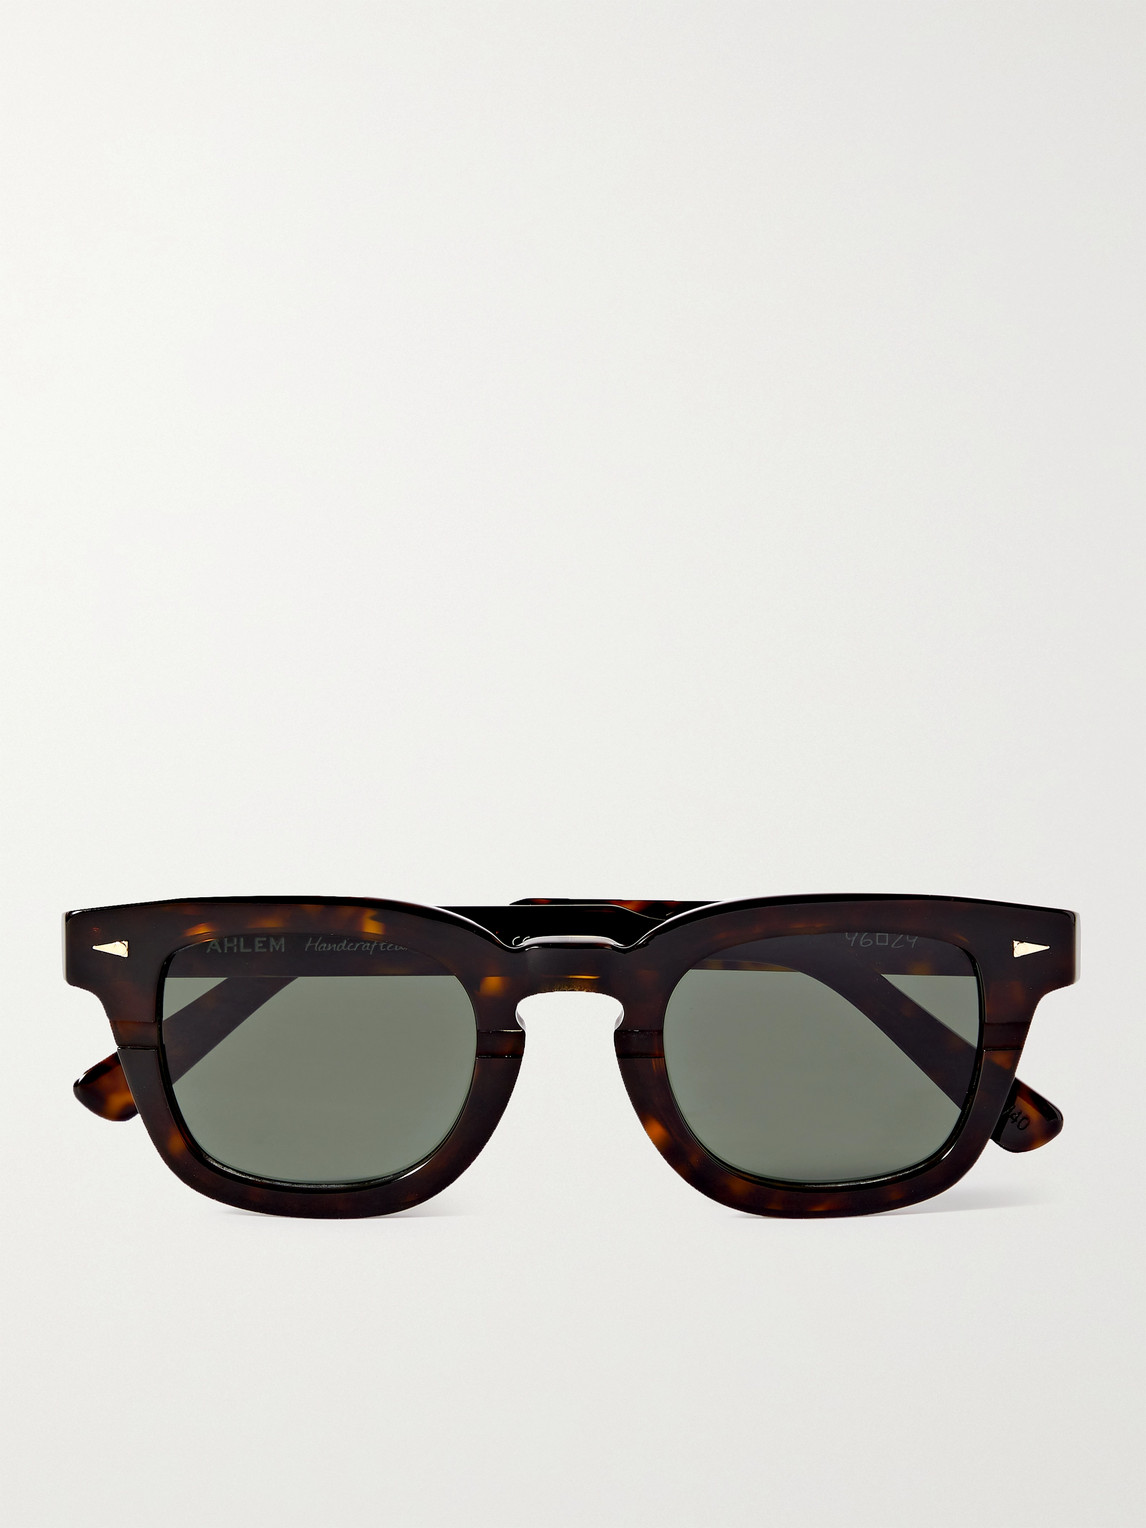 Ahlem Champ De Mars D-frame Tortoiseshell Acetate Sunglasses In Brown